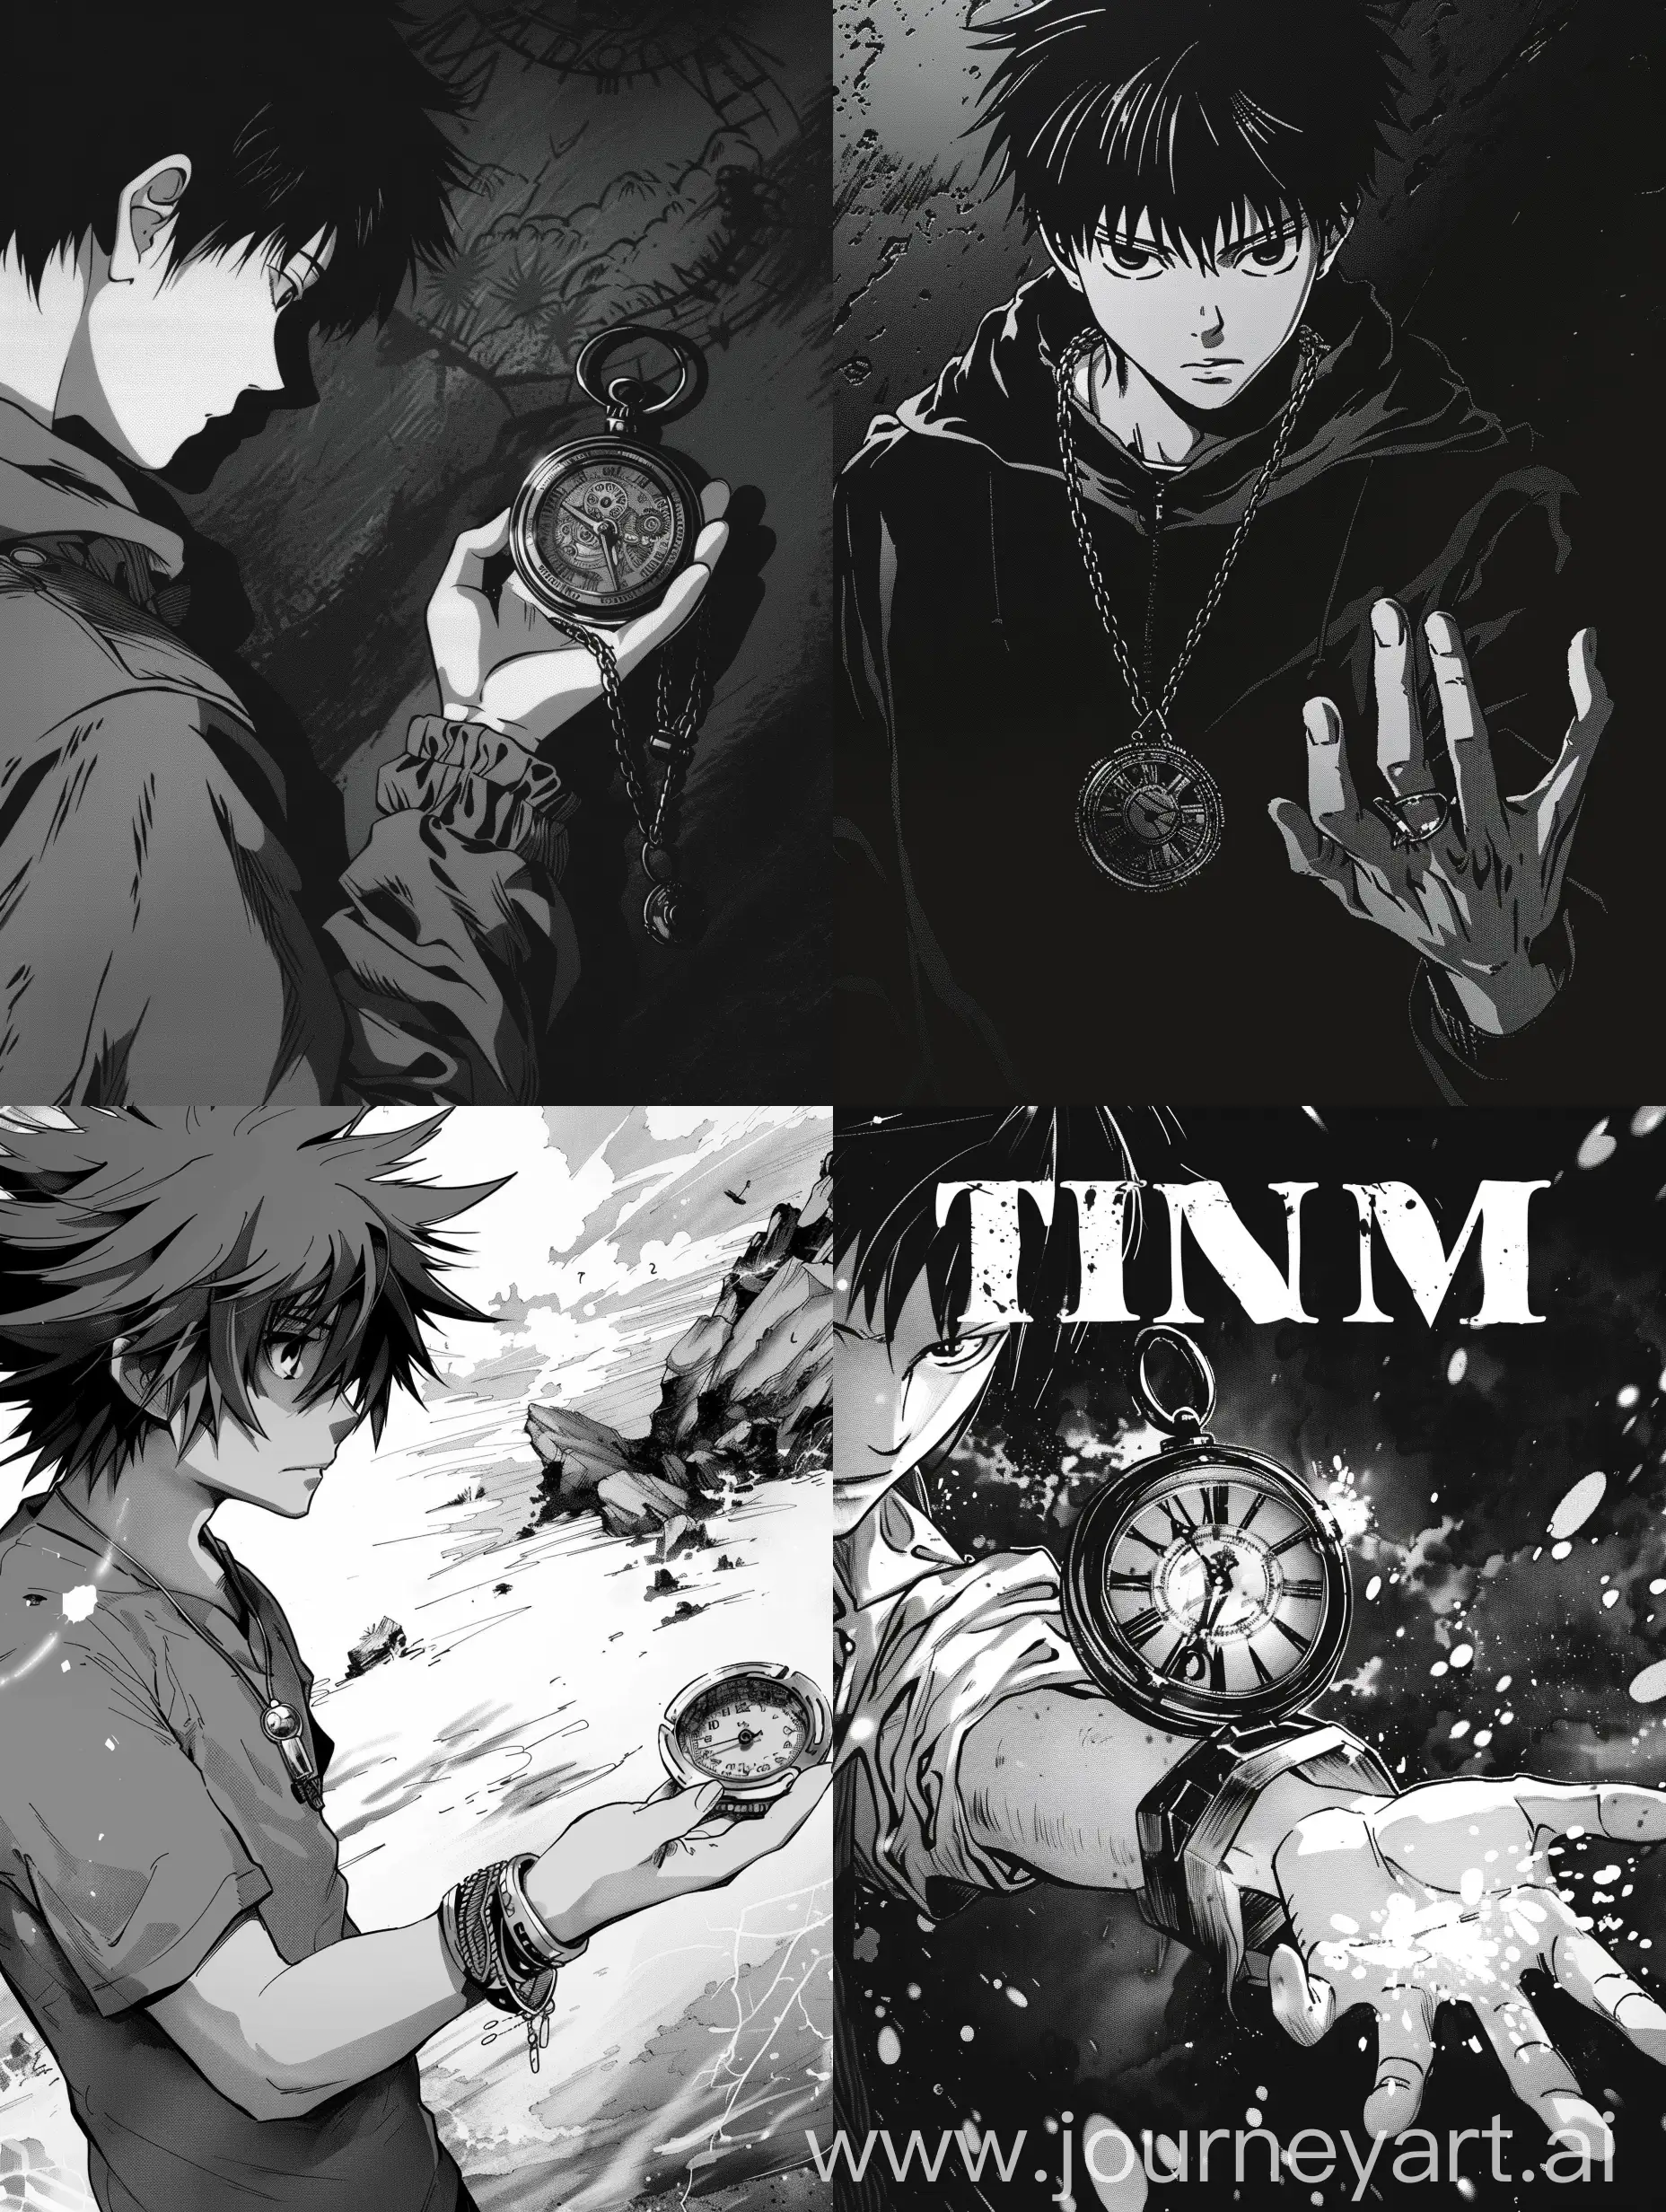 Guy-Holding-Time-Amulet-in-Manga-Style-Illustration